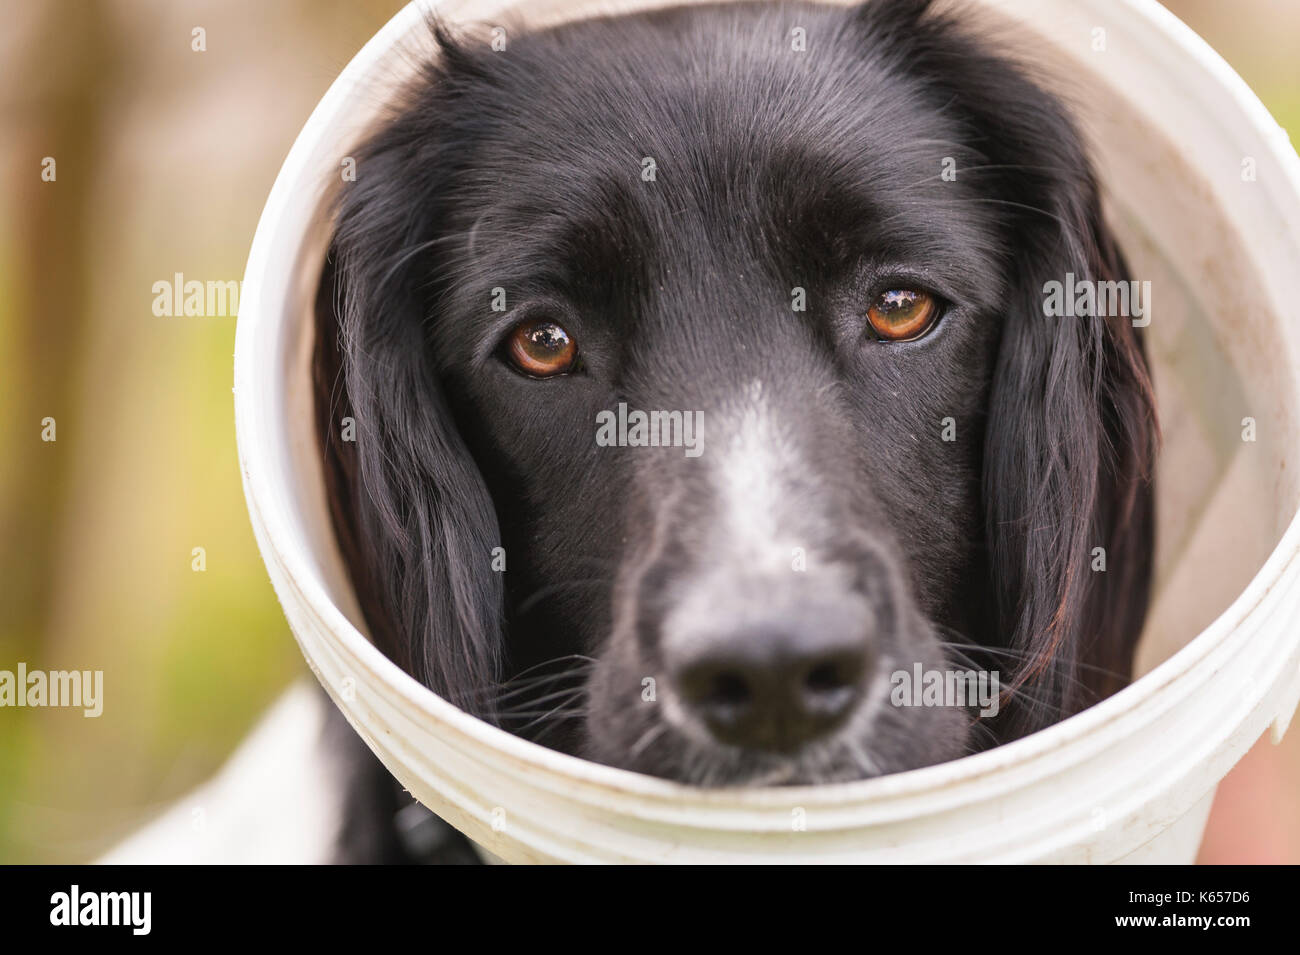 Ein Hund mit einem Plastik Schüssel auf dem Kopf ihr Lecken eine Wunde zu stoppen Stockfoto